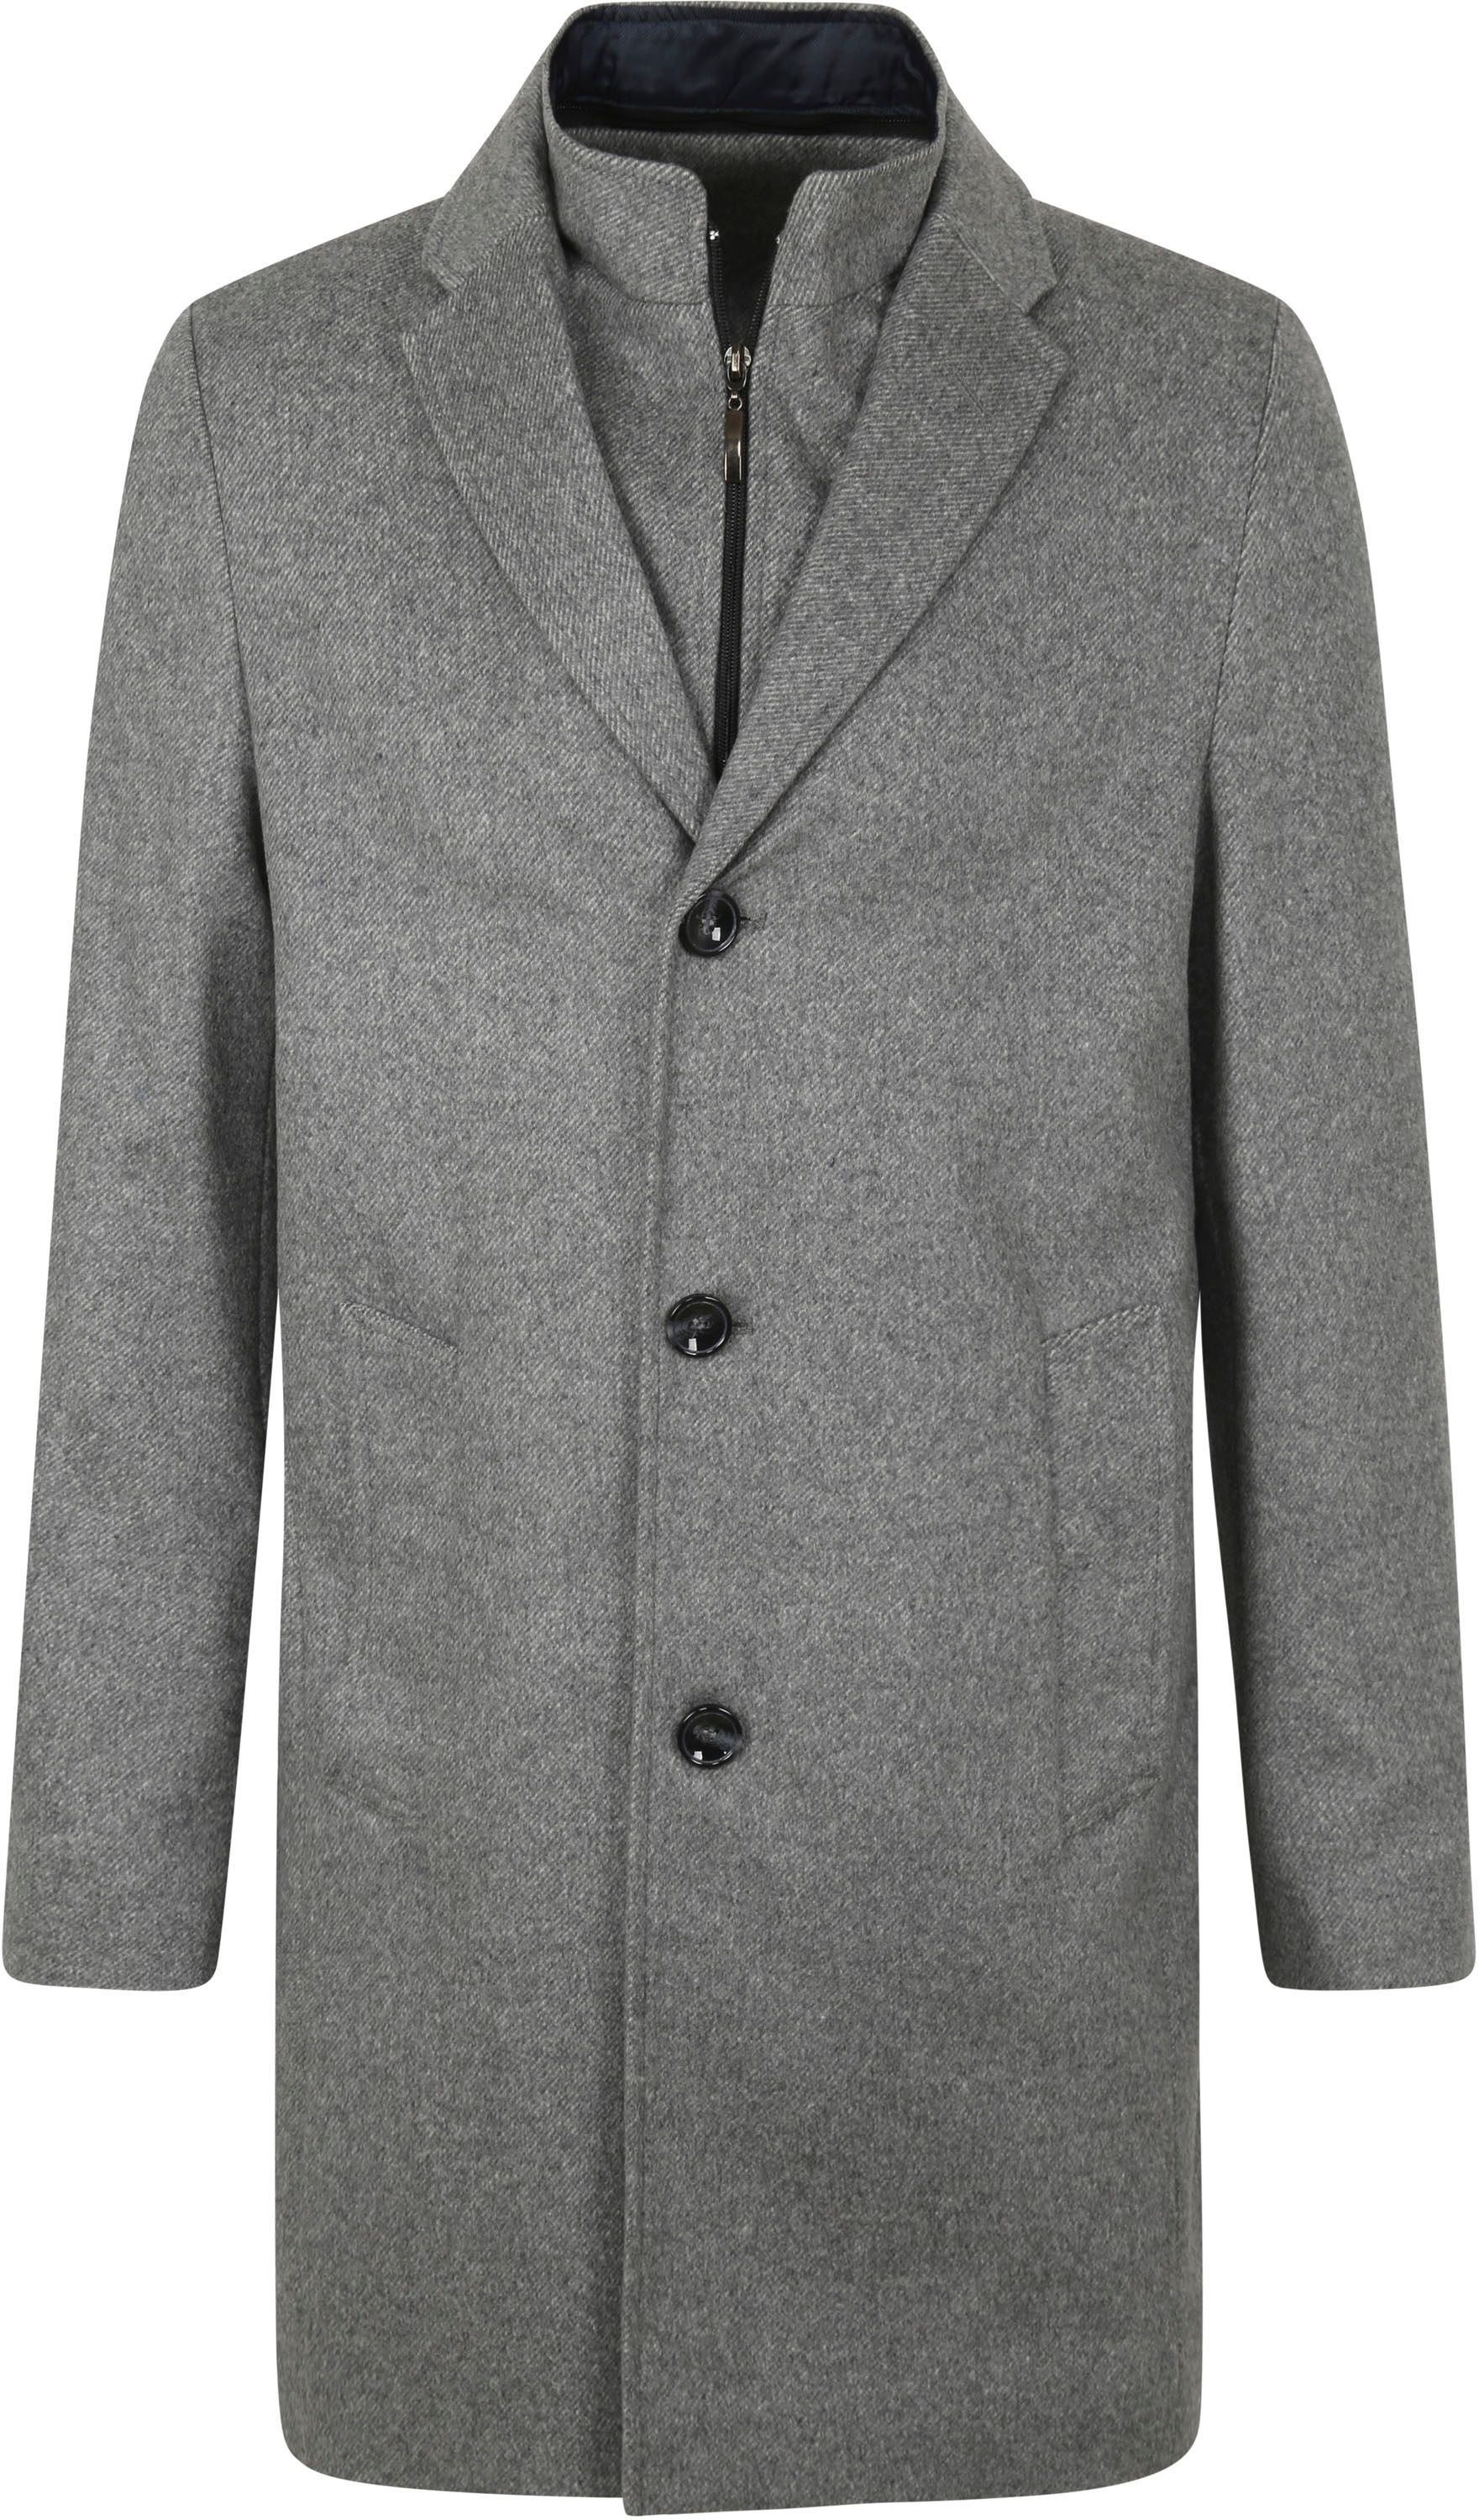 Suitable K150 Coat Grey size 36-R